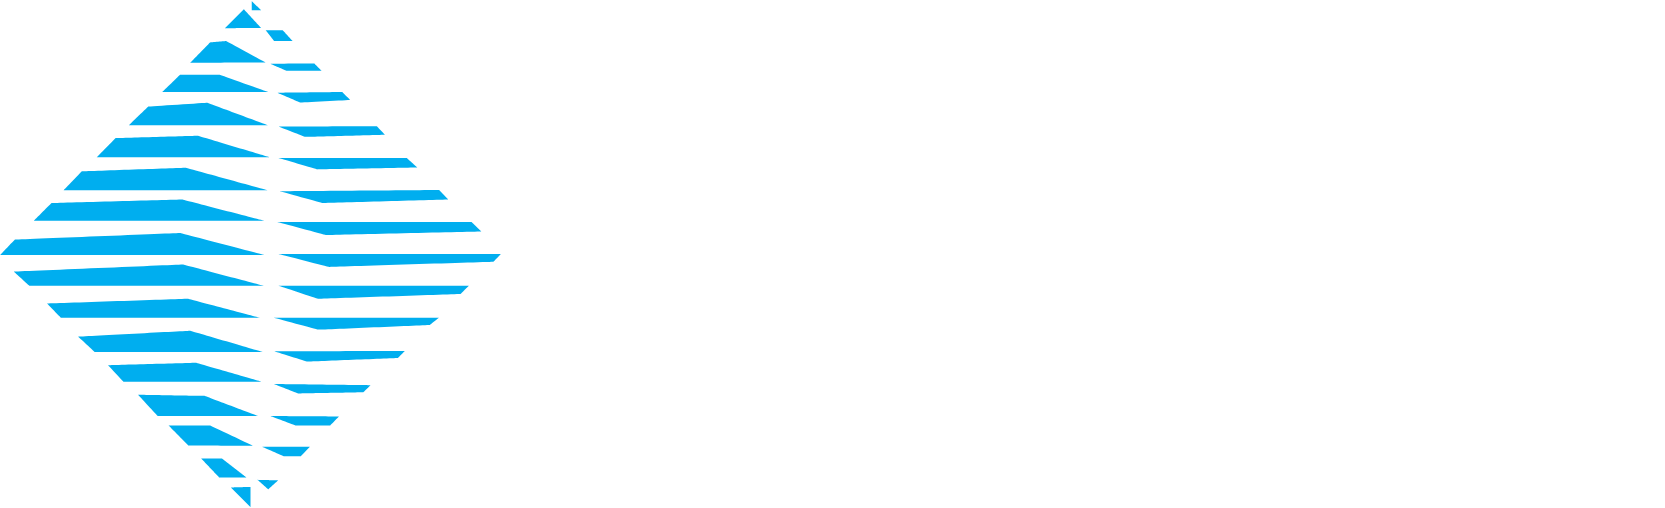 Oneok Logo groß für dunkle Hintergründe (transparentes PNG)